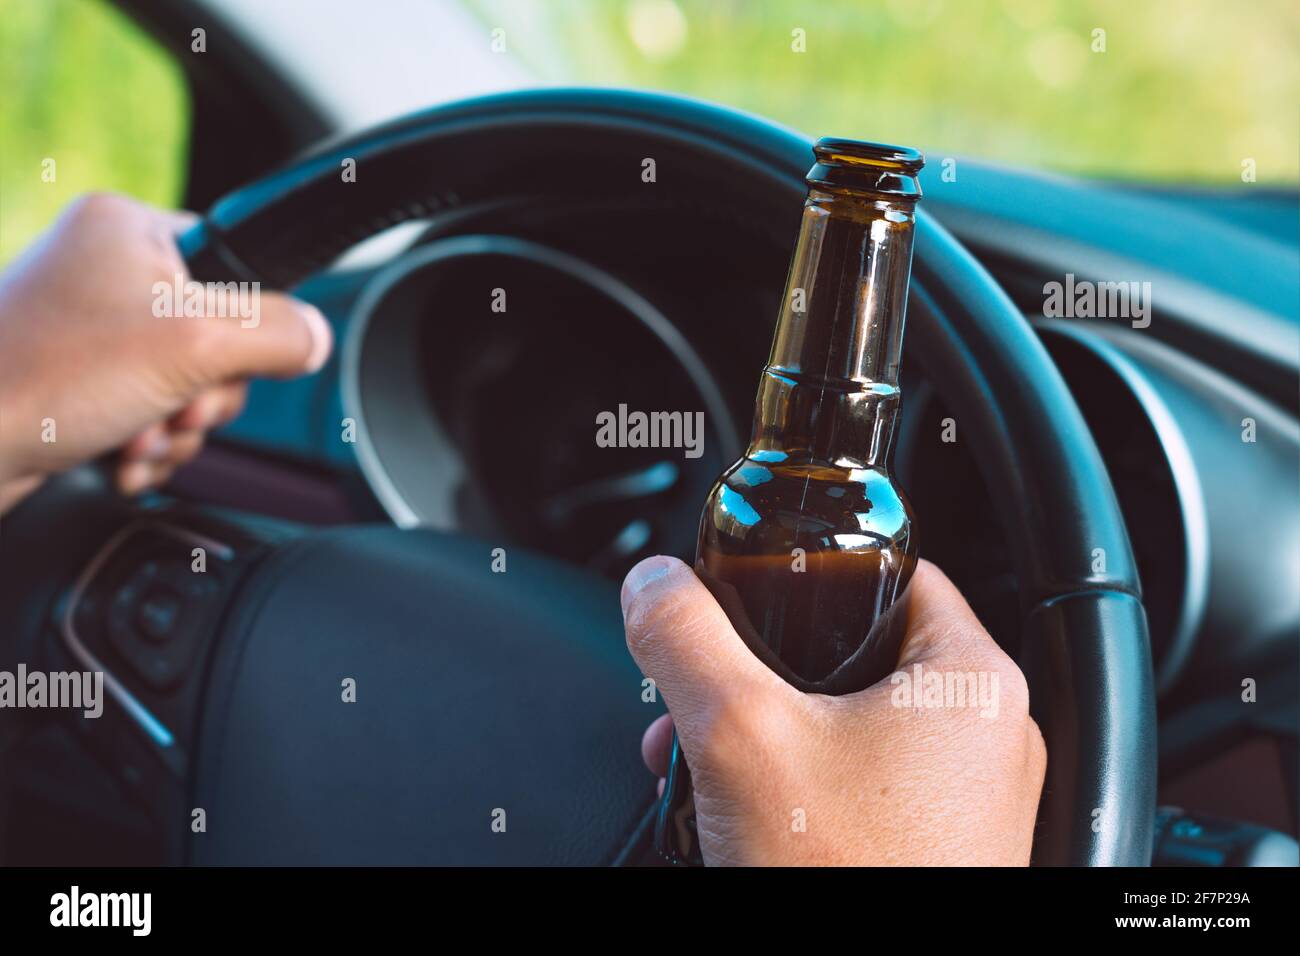 Gros plan des mains du conducteur ivre sur le volant avec une bouteille de bière. Conduite sous influence d'alcool Banque D'Images